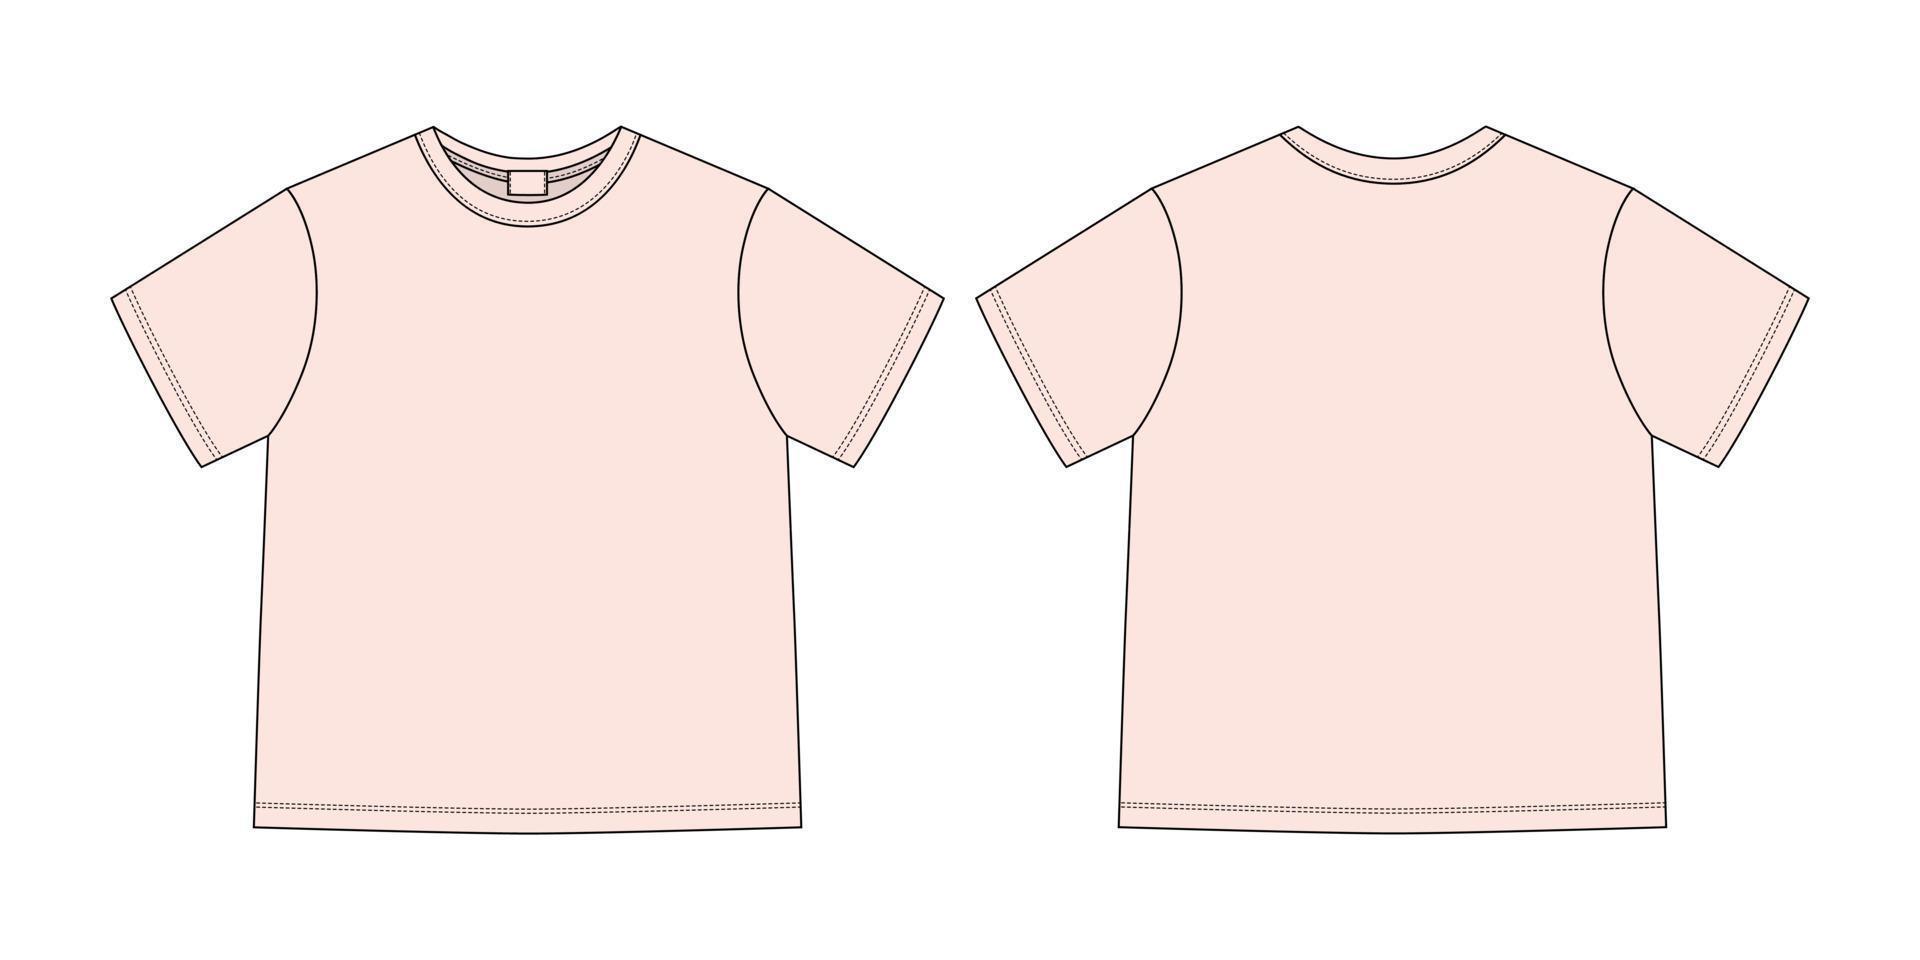 croquis technique de vêtements t-shirt unisexe. couleur rose clair. vecteur